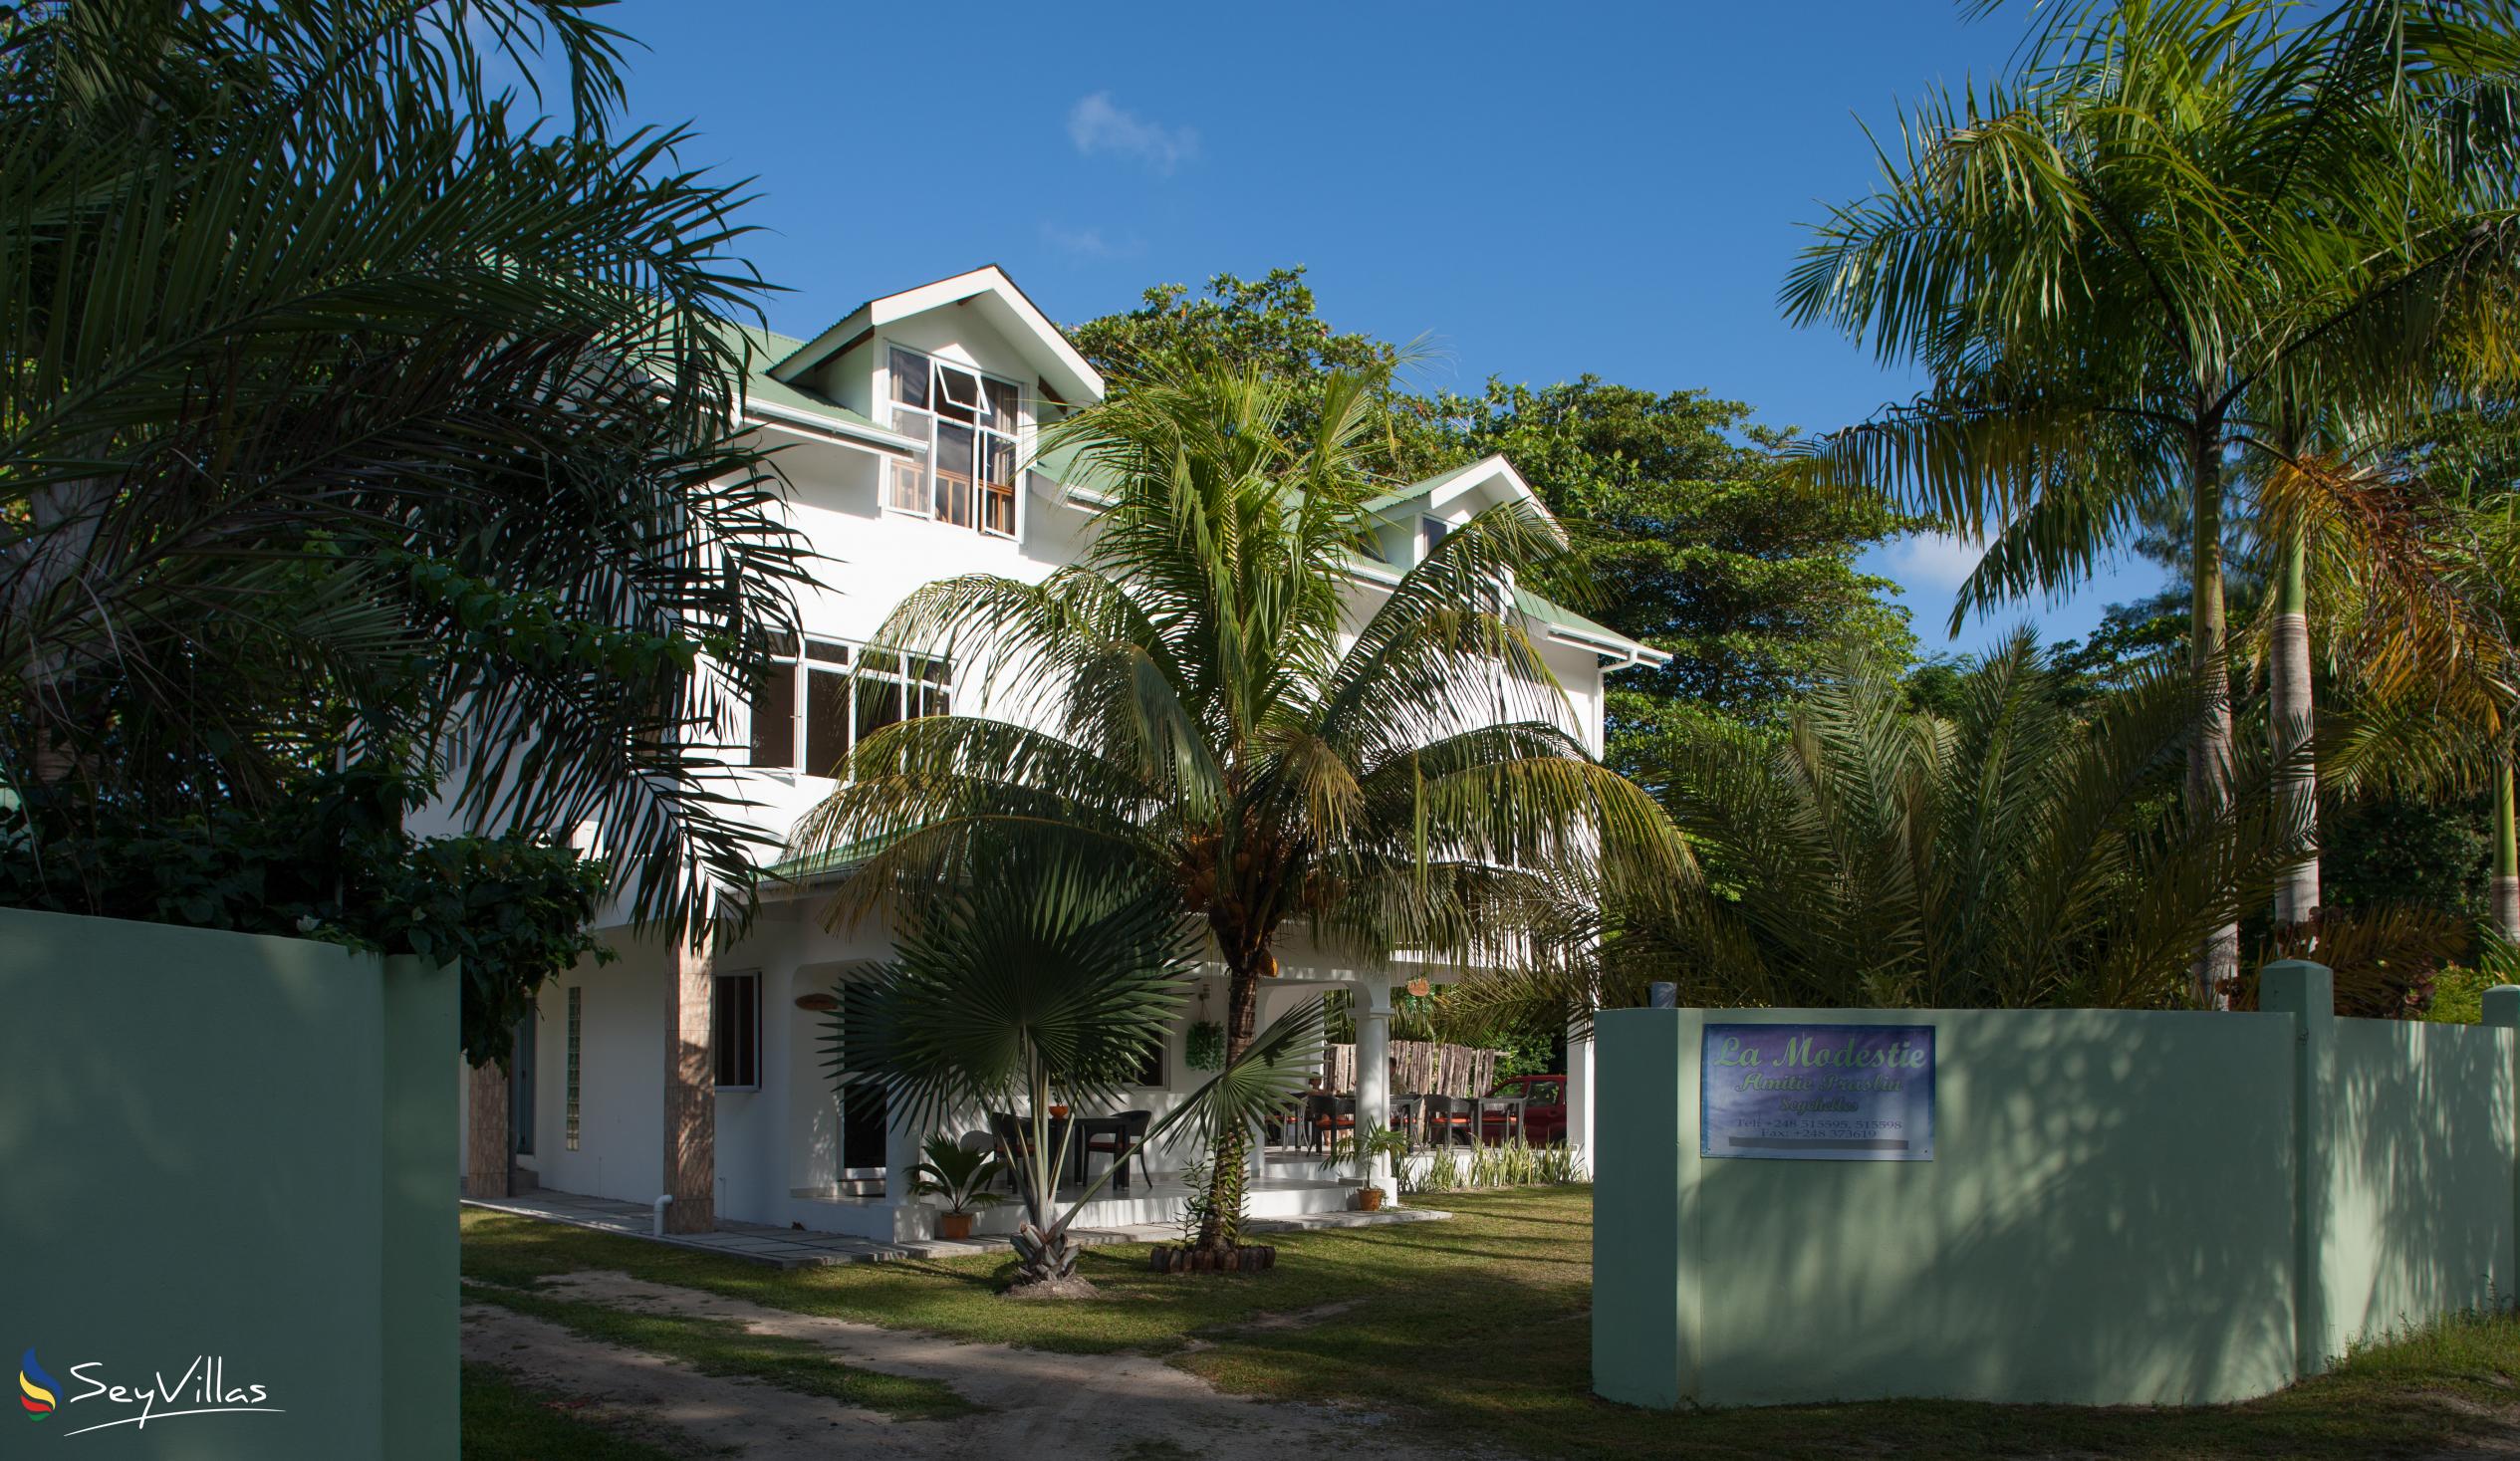 Foto 9: La Modestie Villa - Aussenbereich - Praslin (Seychellen)